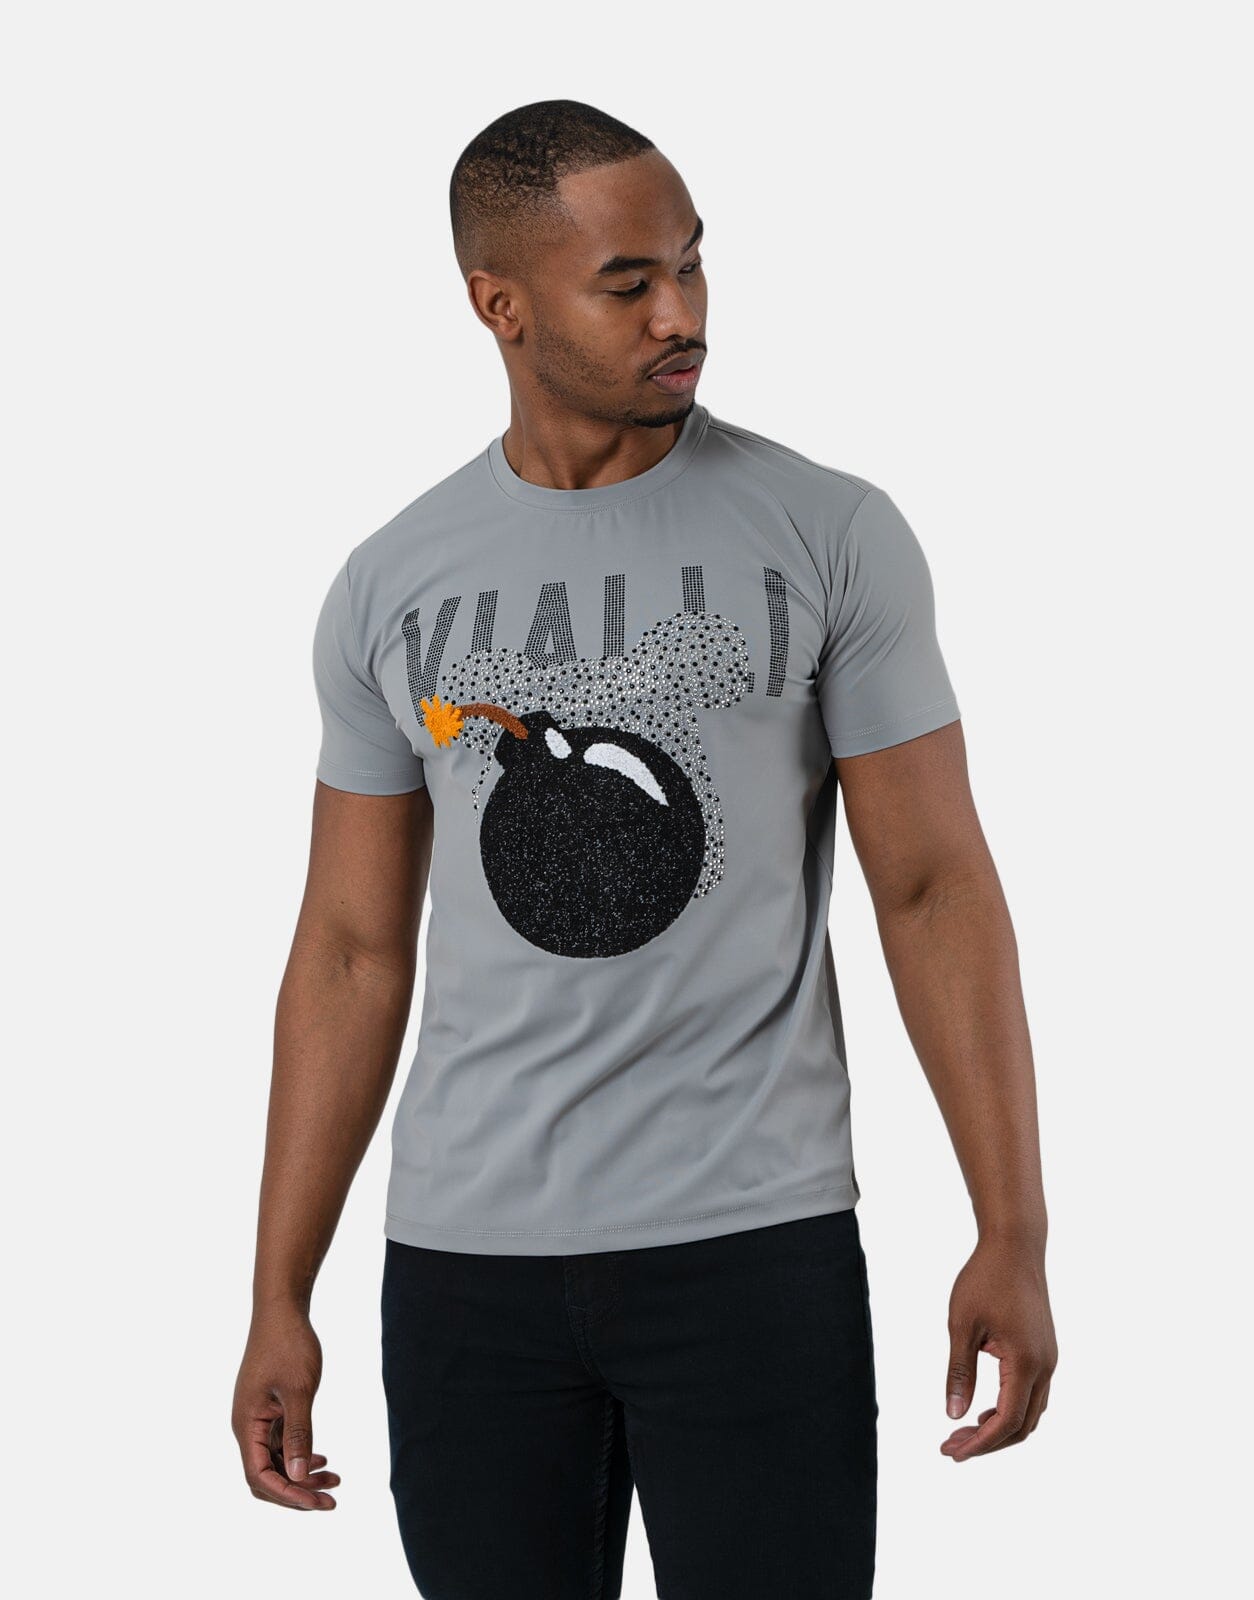 Vialli Fomber T-Shirt